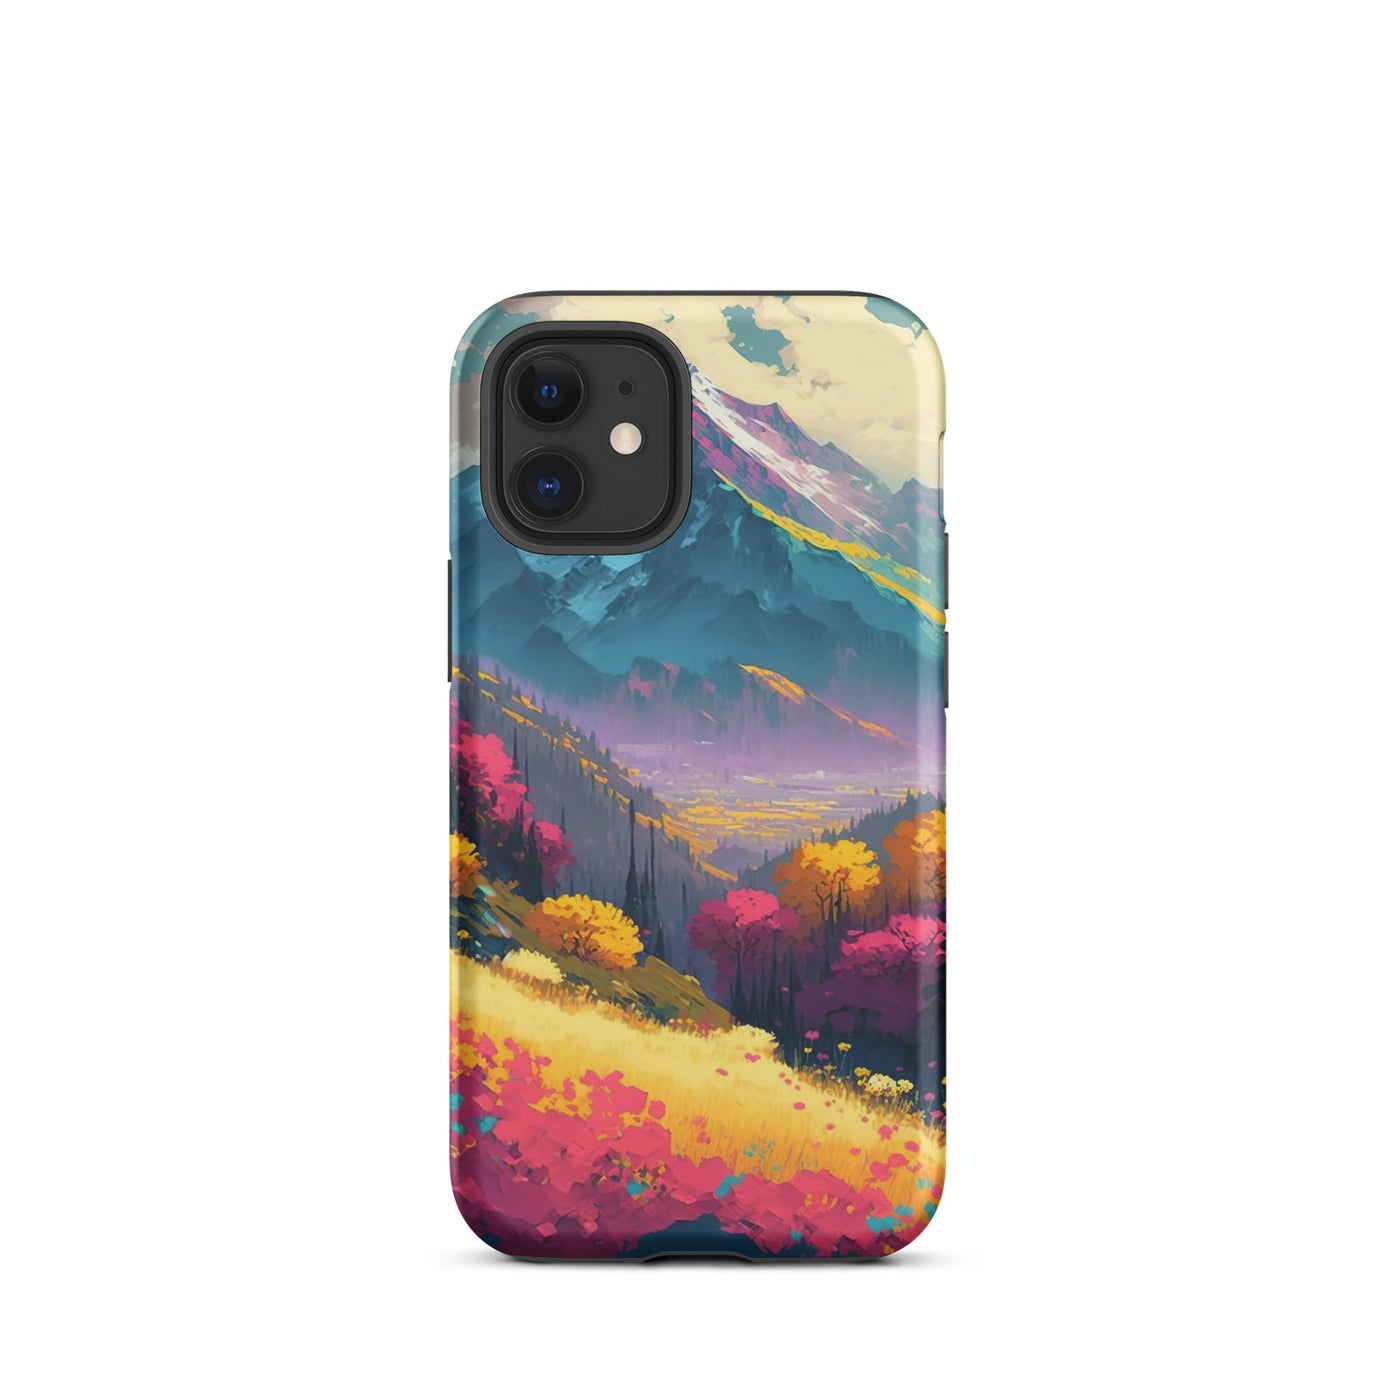 Berge, pinke und gelbe Bäume, sowie Blumen - Farbige Malerei - iPhone Schutzhülle (robust) berge xxx iPhone 12 mini